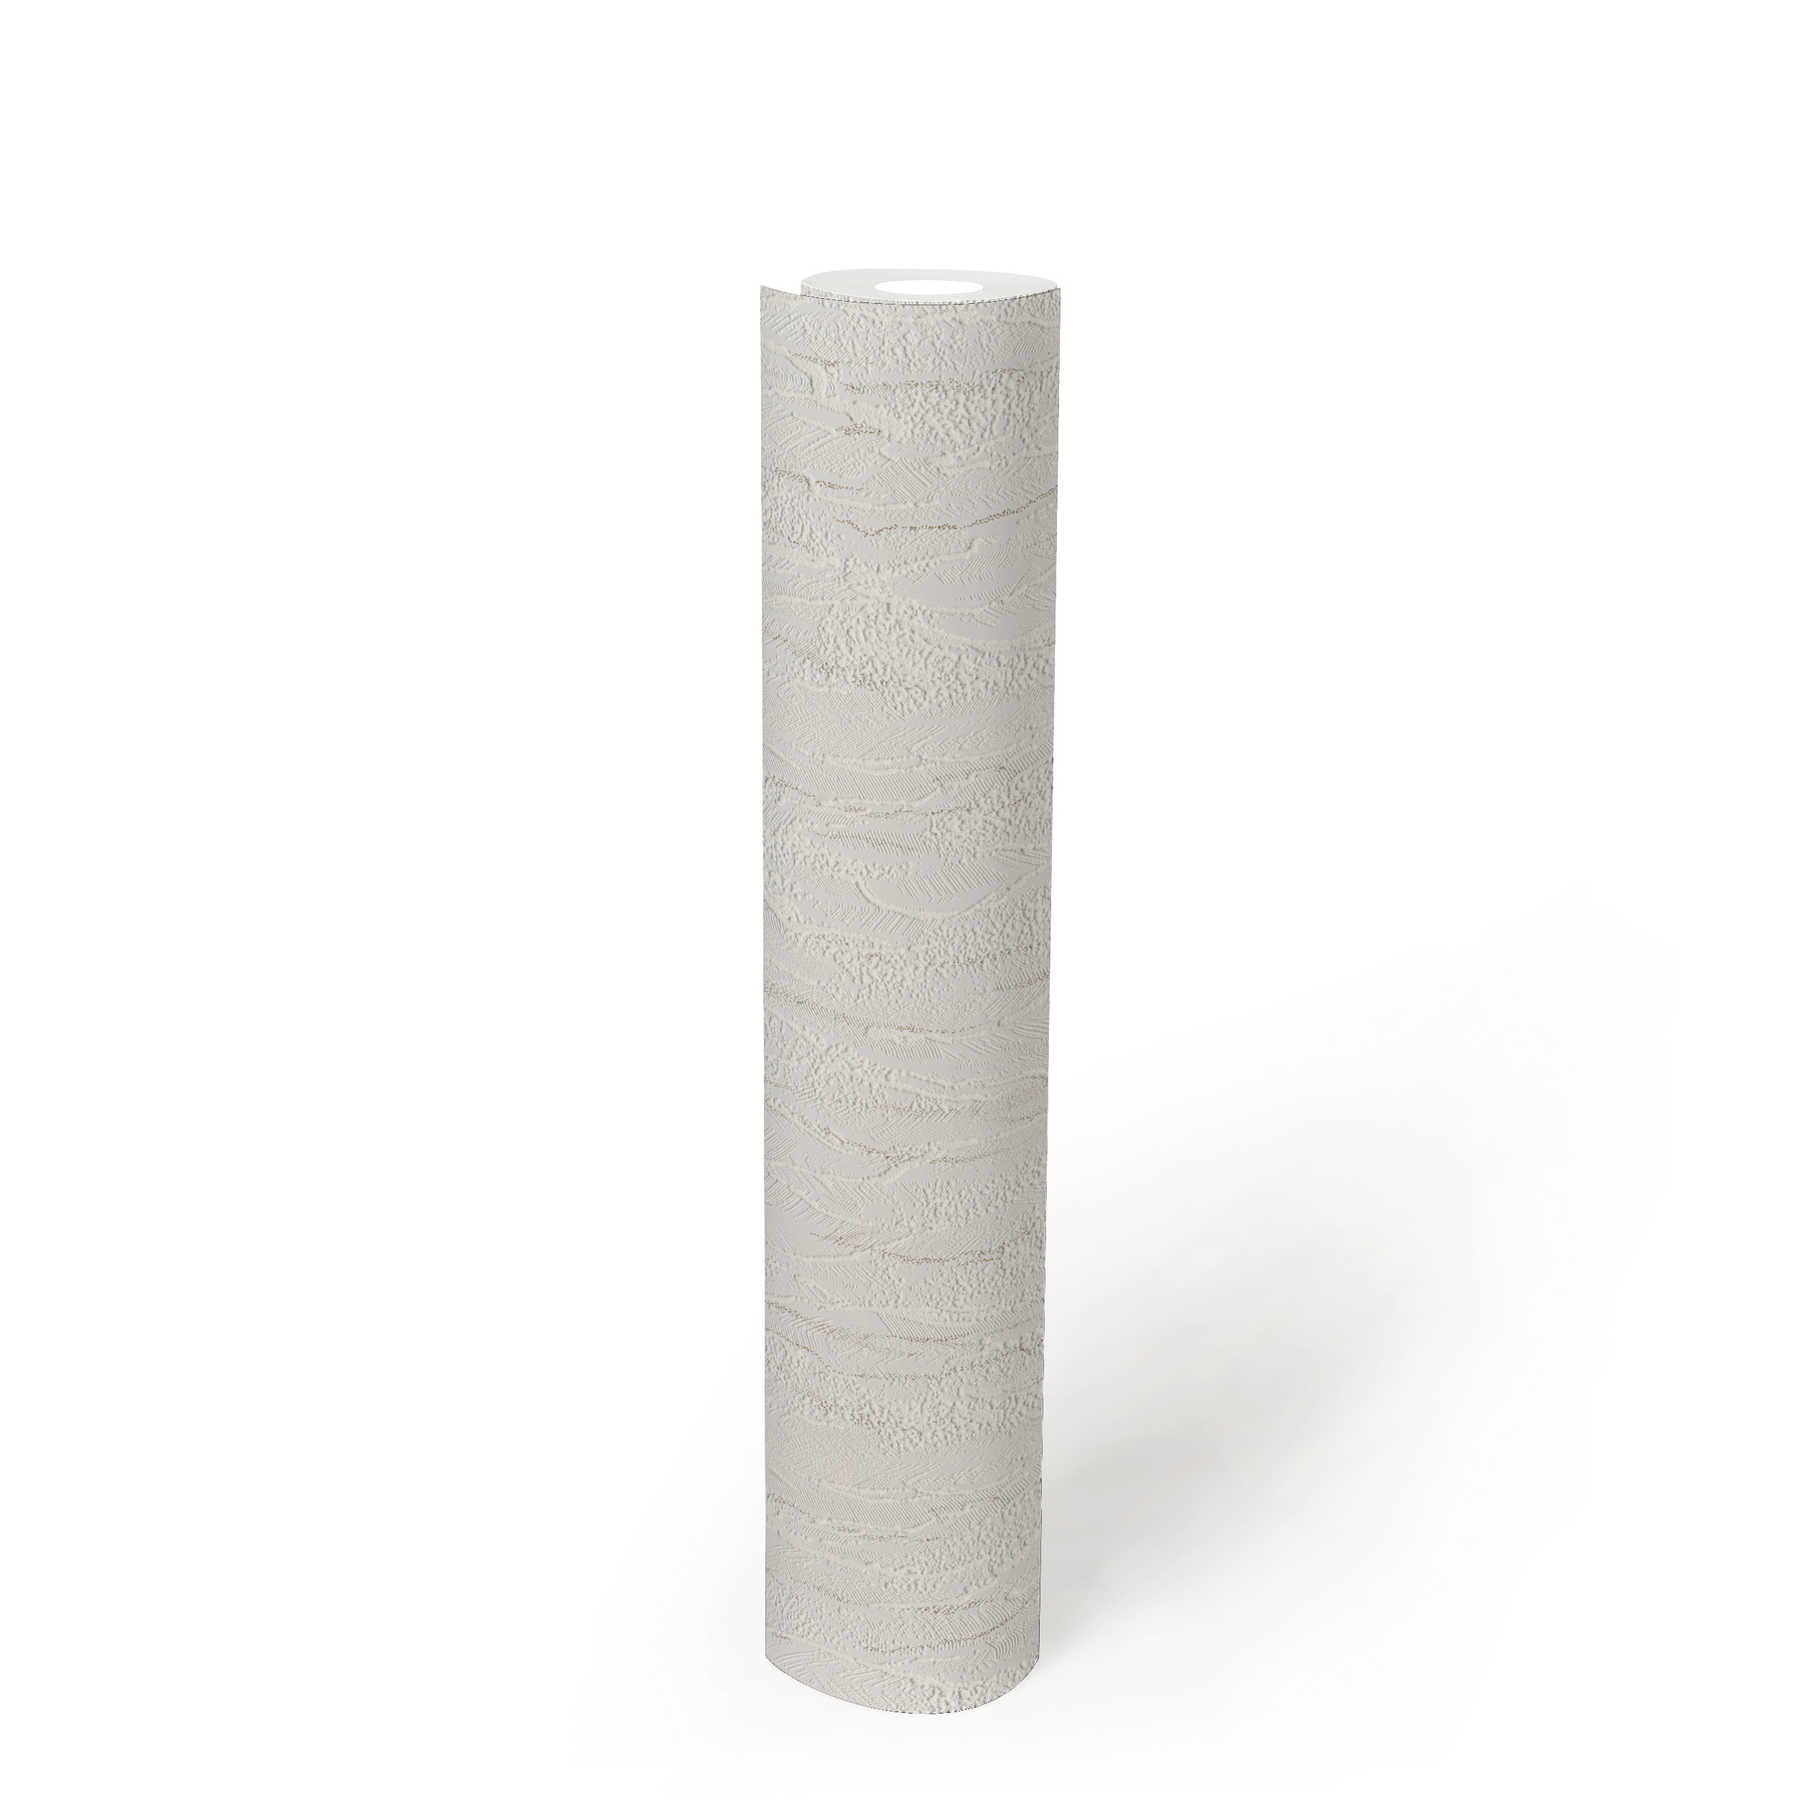             Onderlaag behang wit structuurpatroon, grijze accenten - Wit
        